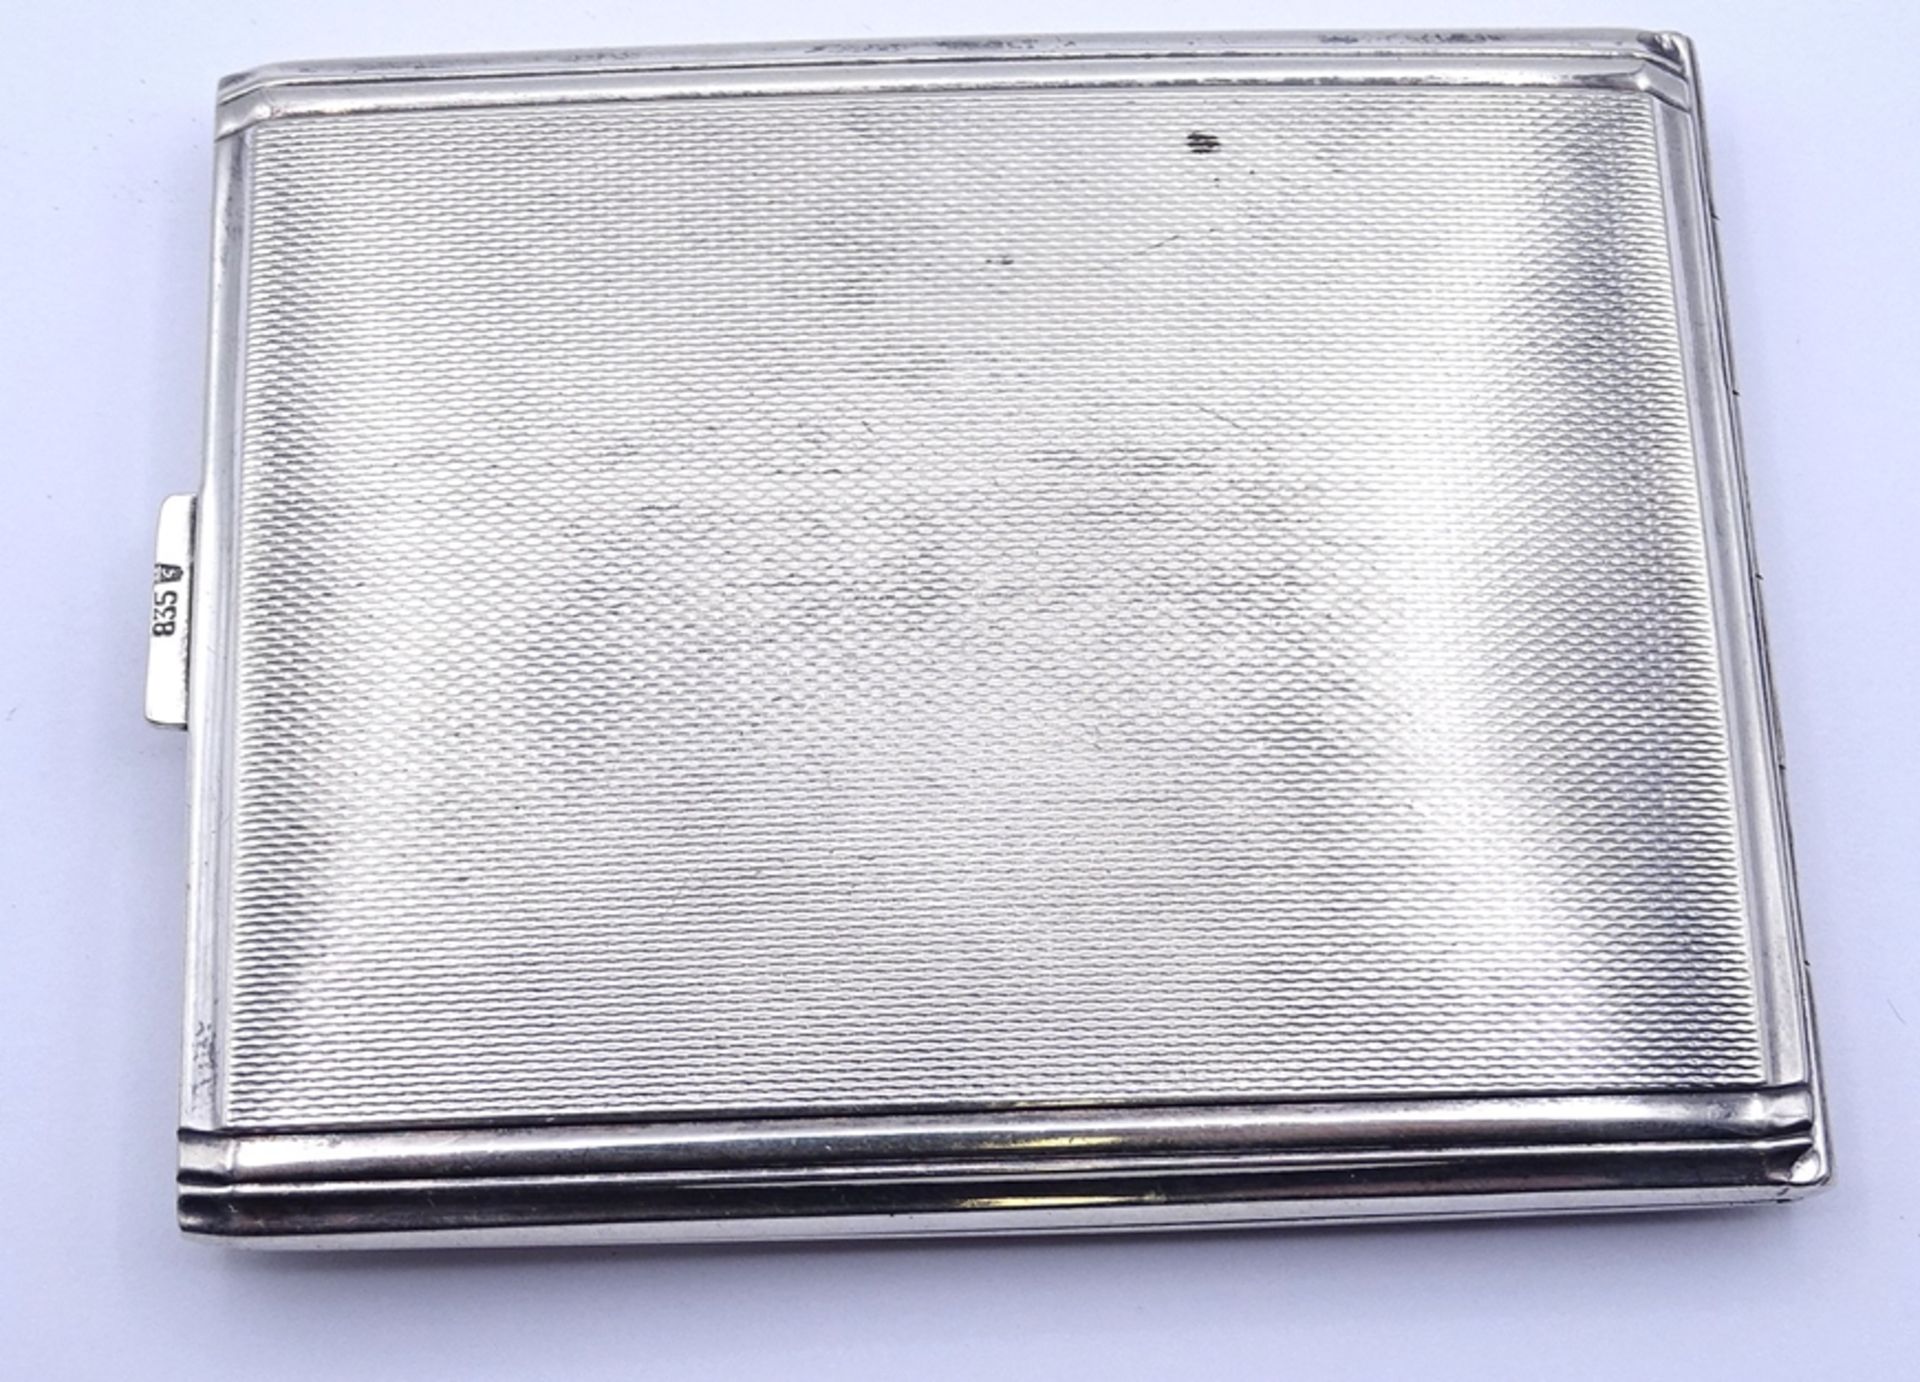 Zigaretten Etui, Silber 0.835, Initialen M.L. 7,4x9,2cm, 86g. - Bild 2 aus 4